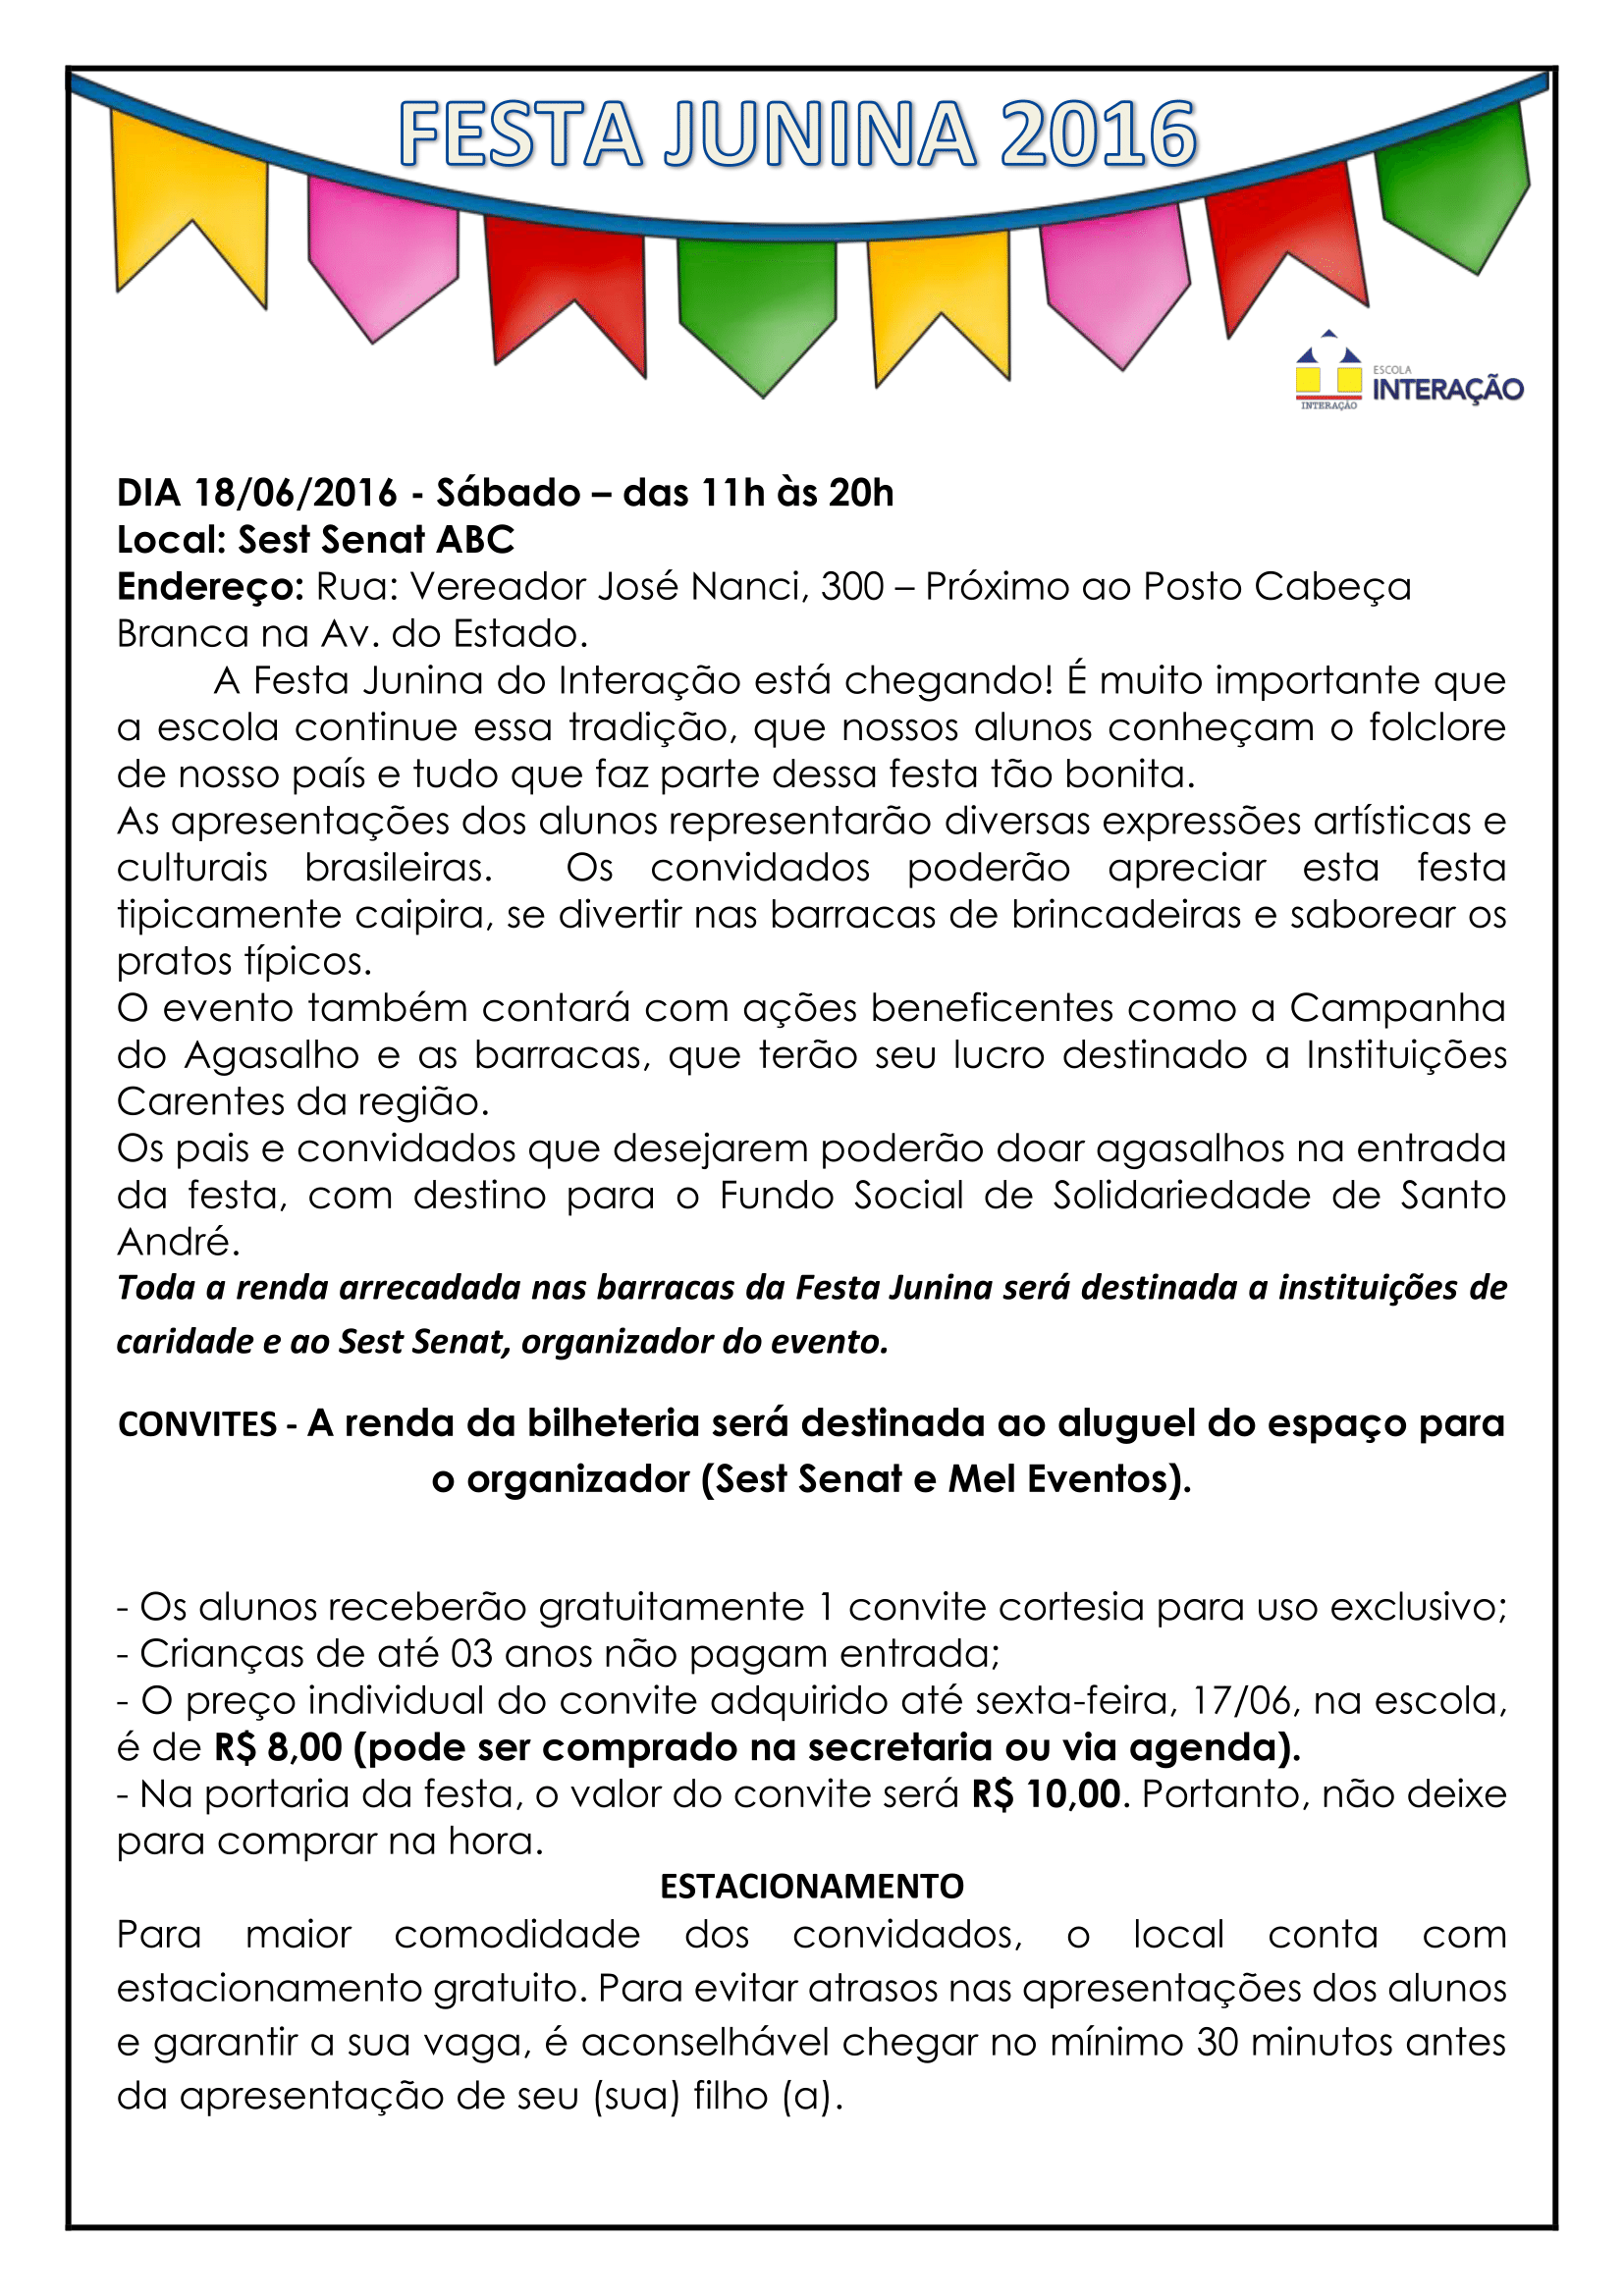 FESTA JUNINA INTERAÇÃO 2016 (1)-1